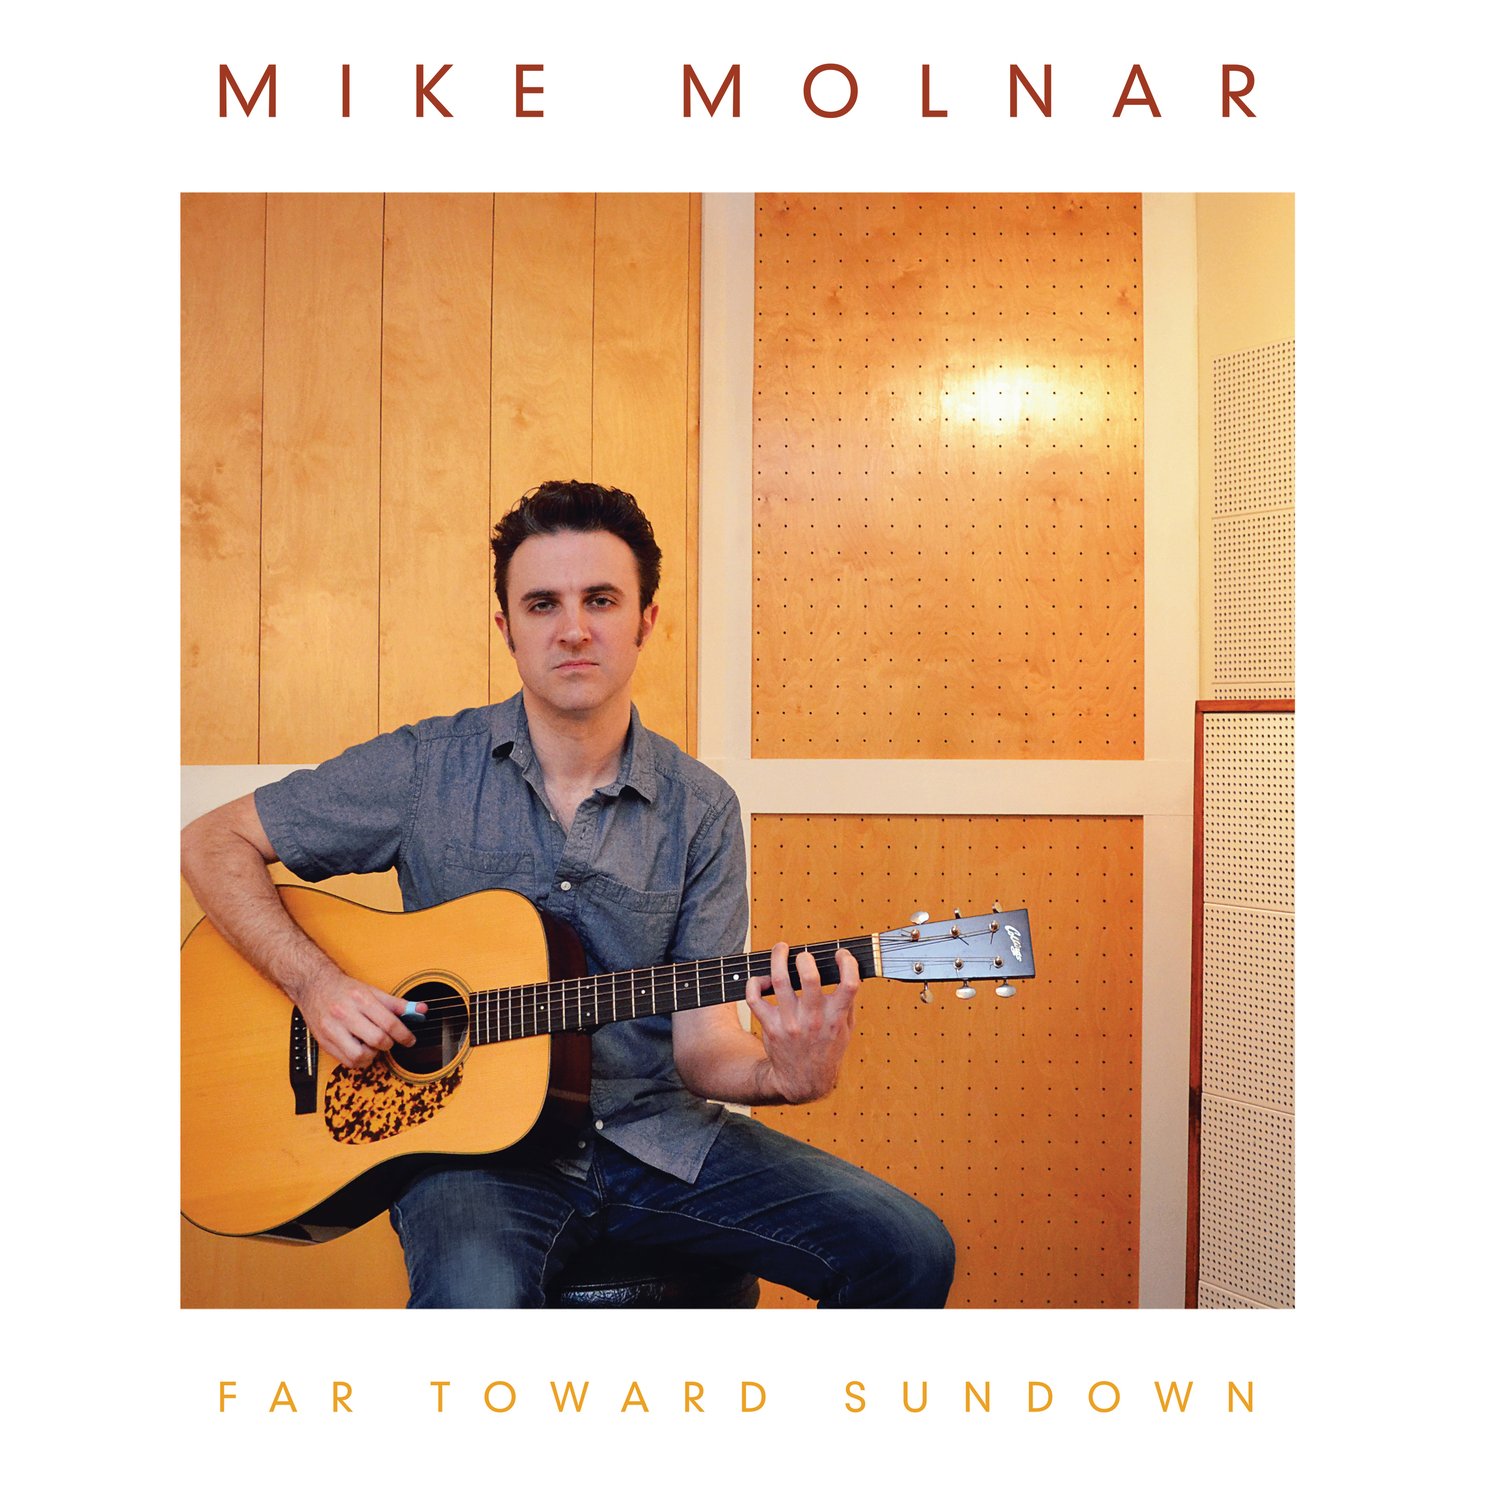 Mike Molnar "Far Toward Sundown"